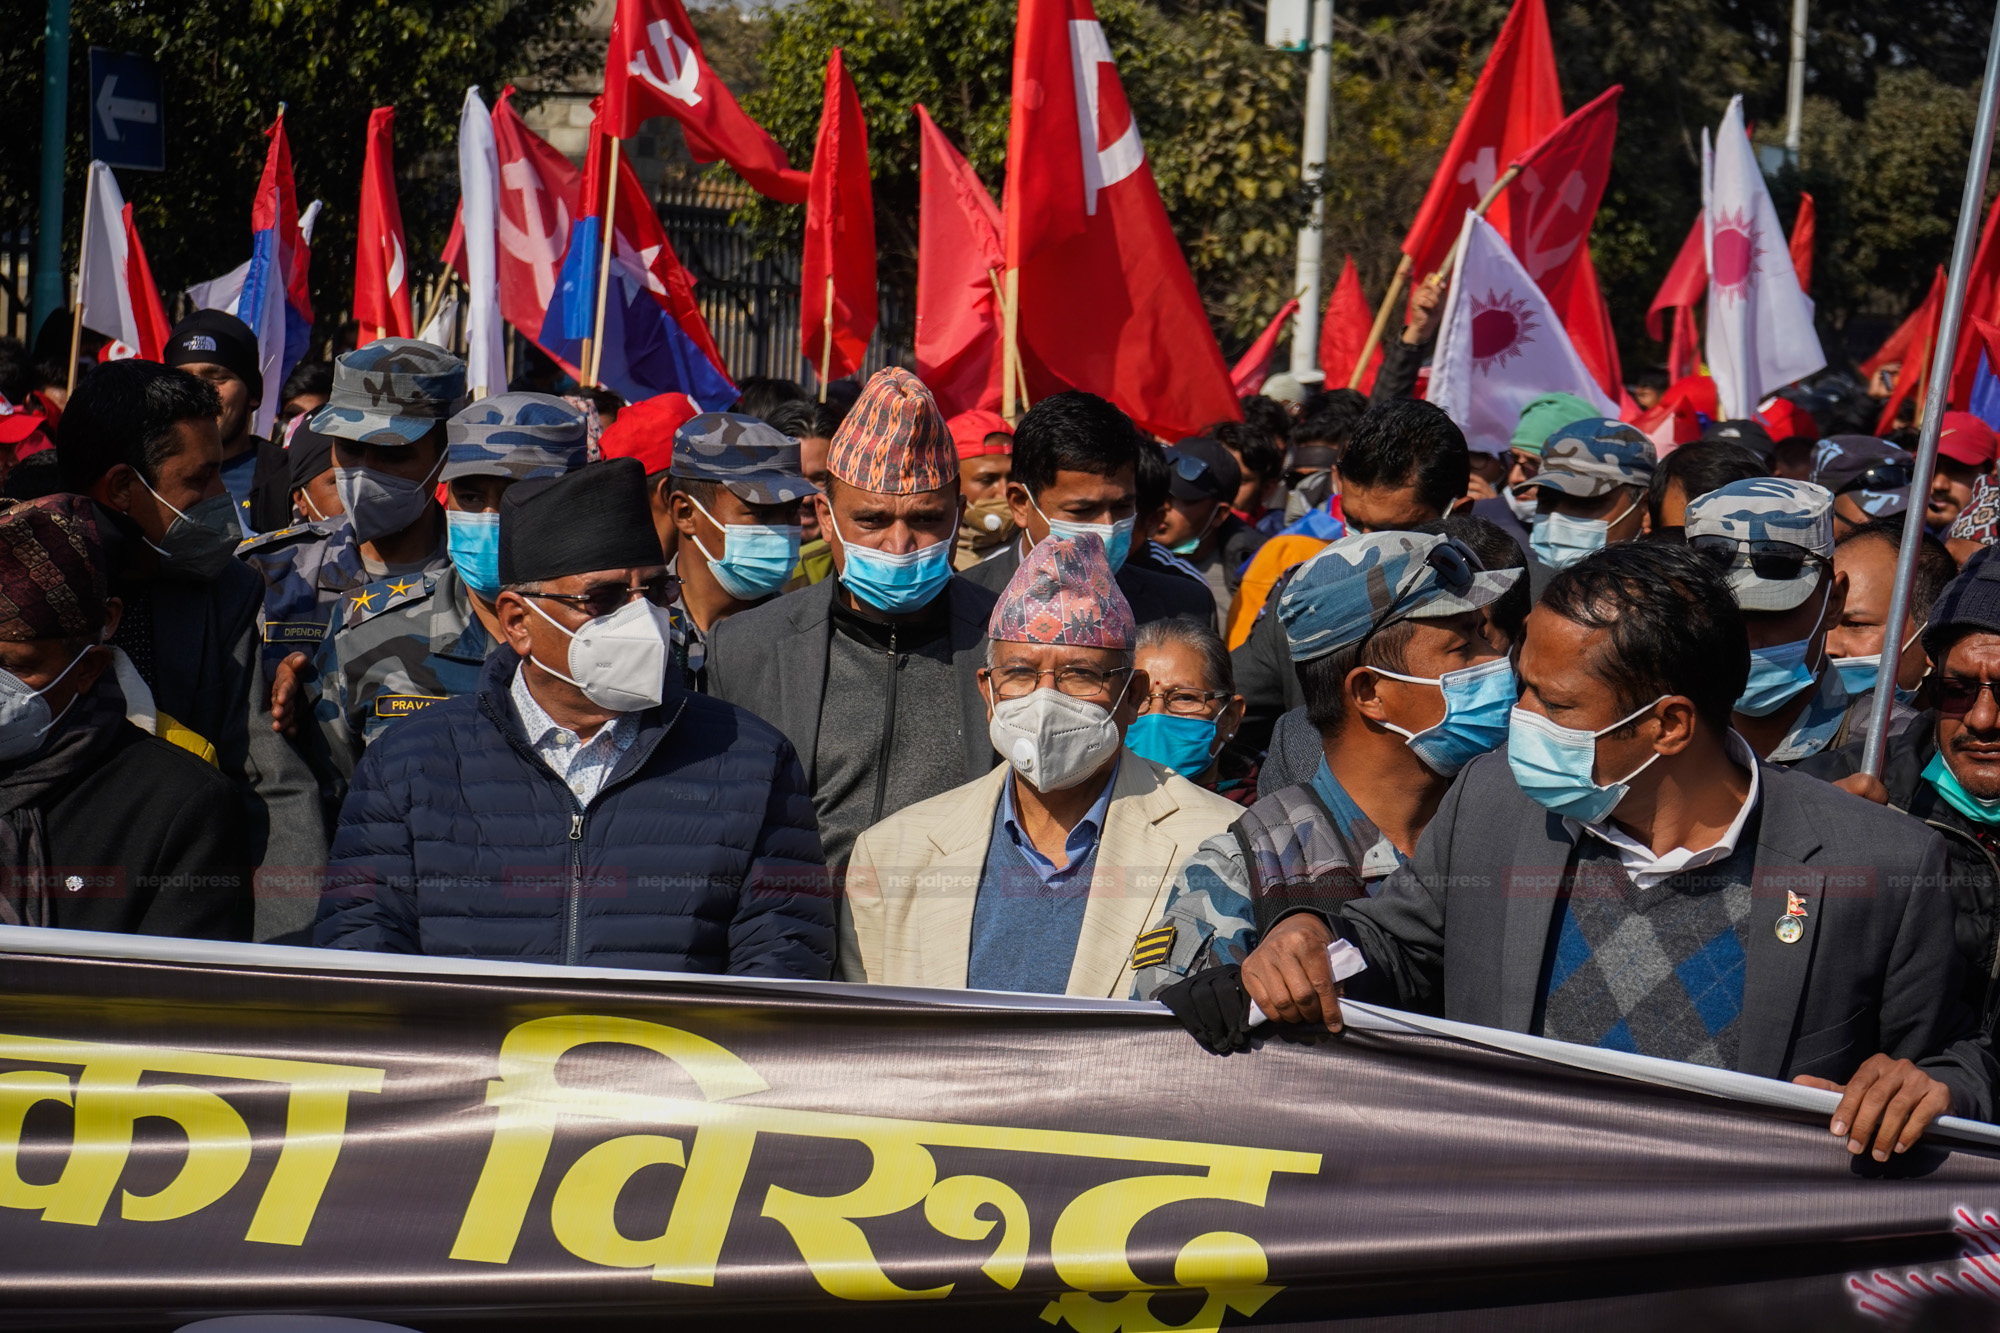 काठमाडौंको प्रदर्शनमा २ हजार कार्यकर्ता लिएर आउन प्रचण्ड-माधव पक्षको उर्दी (भिडियो)